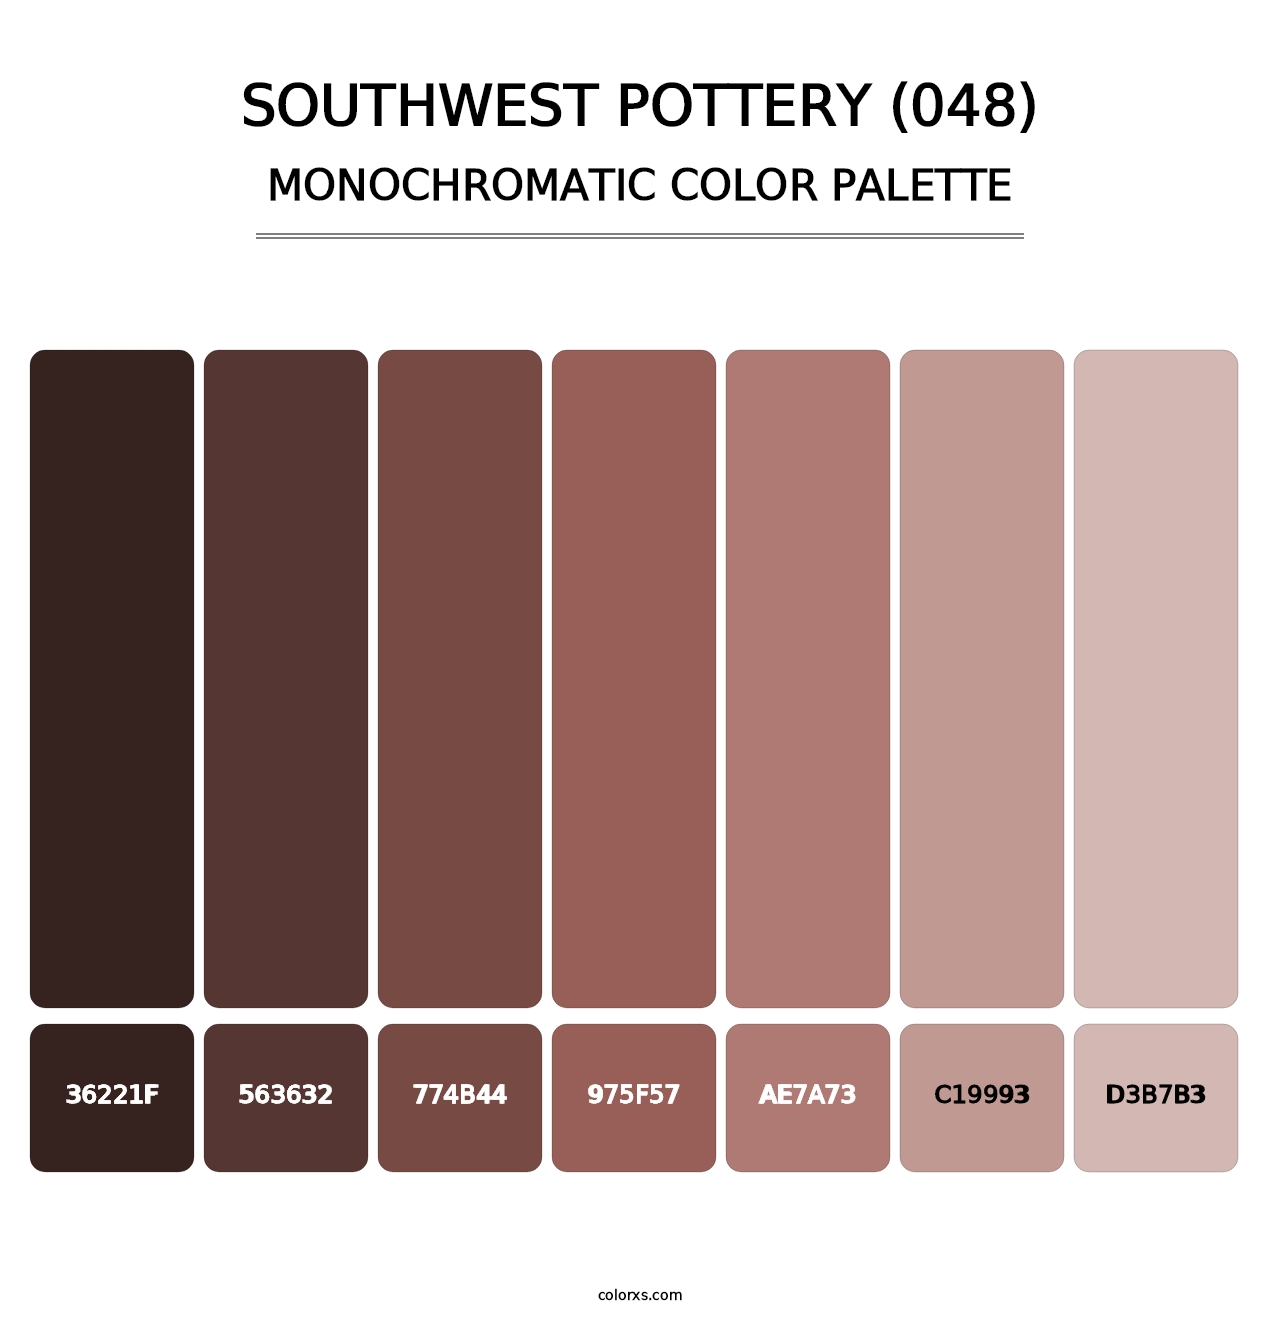 Southwest Pottery (048) - Monochromatic Color Palette